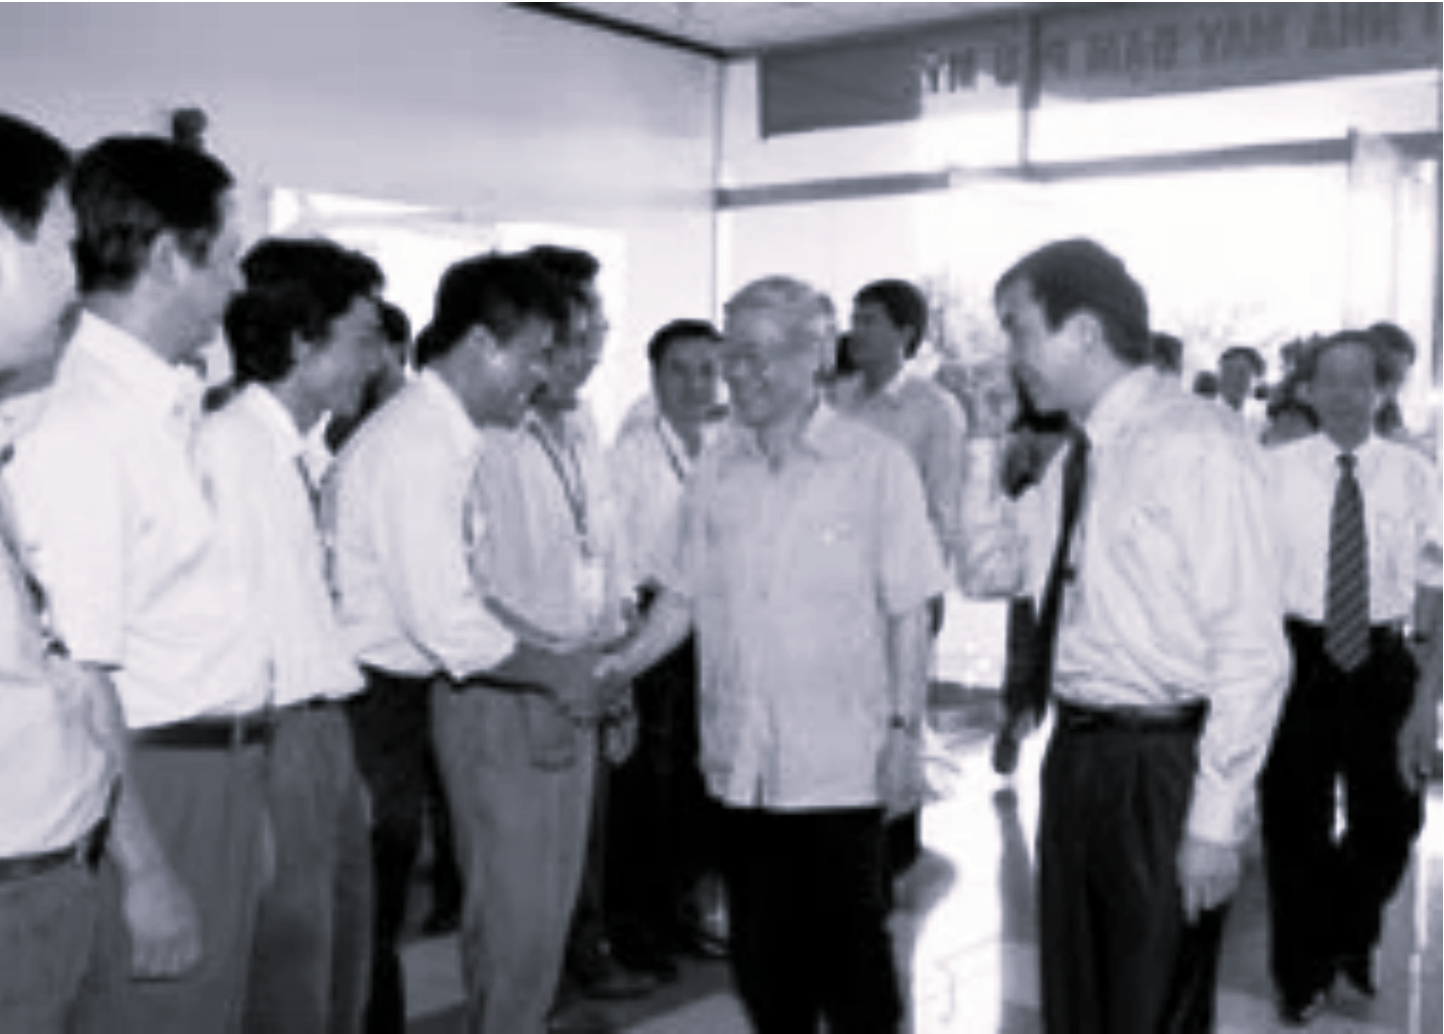 Kỷ niệm về chuyến thăm và làm việc của đồng chí Nguyễn Phú Trọng tại Nhà máy Đạm Phú Mỹ năm 2006